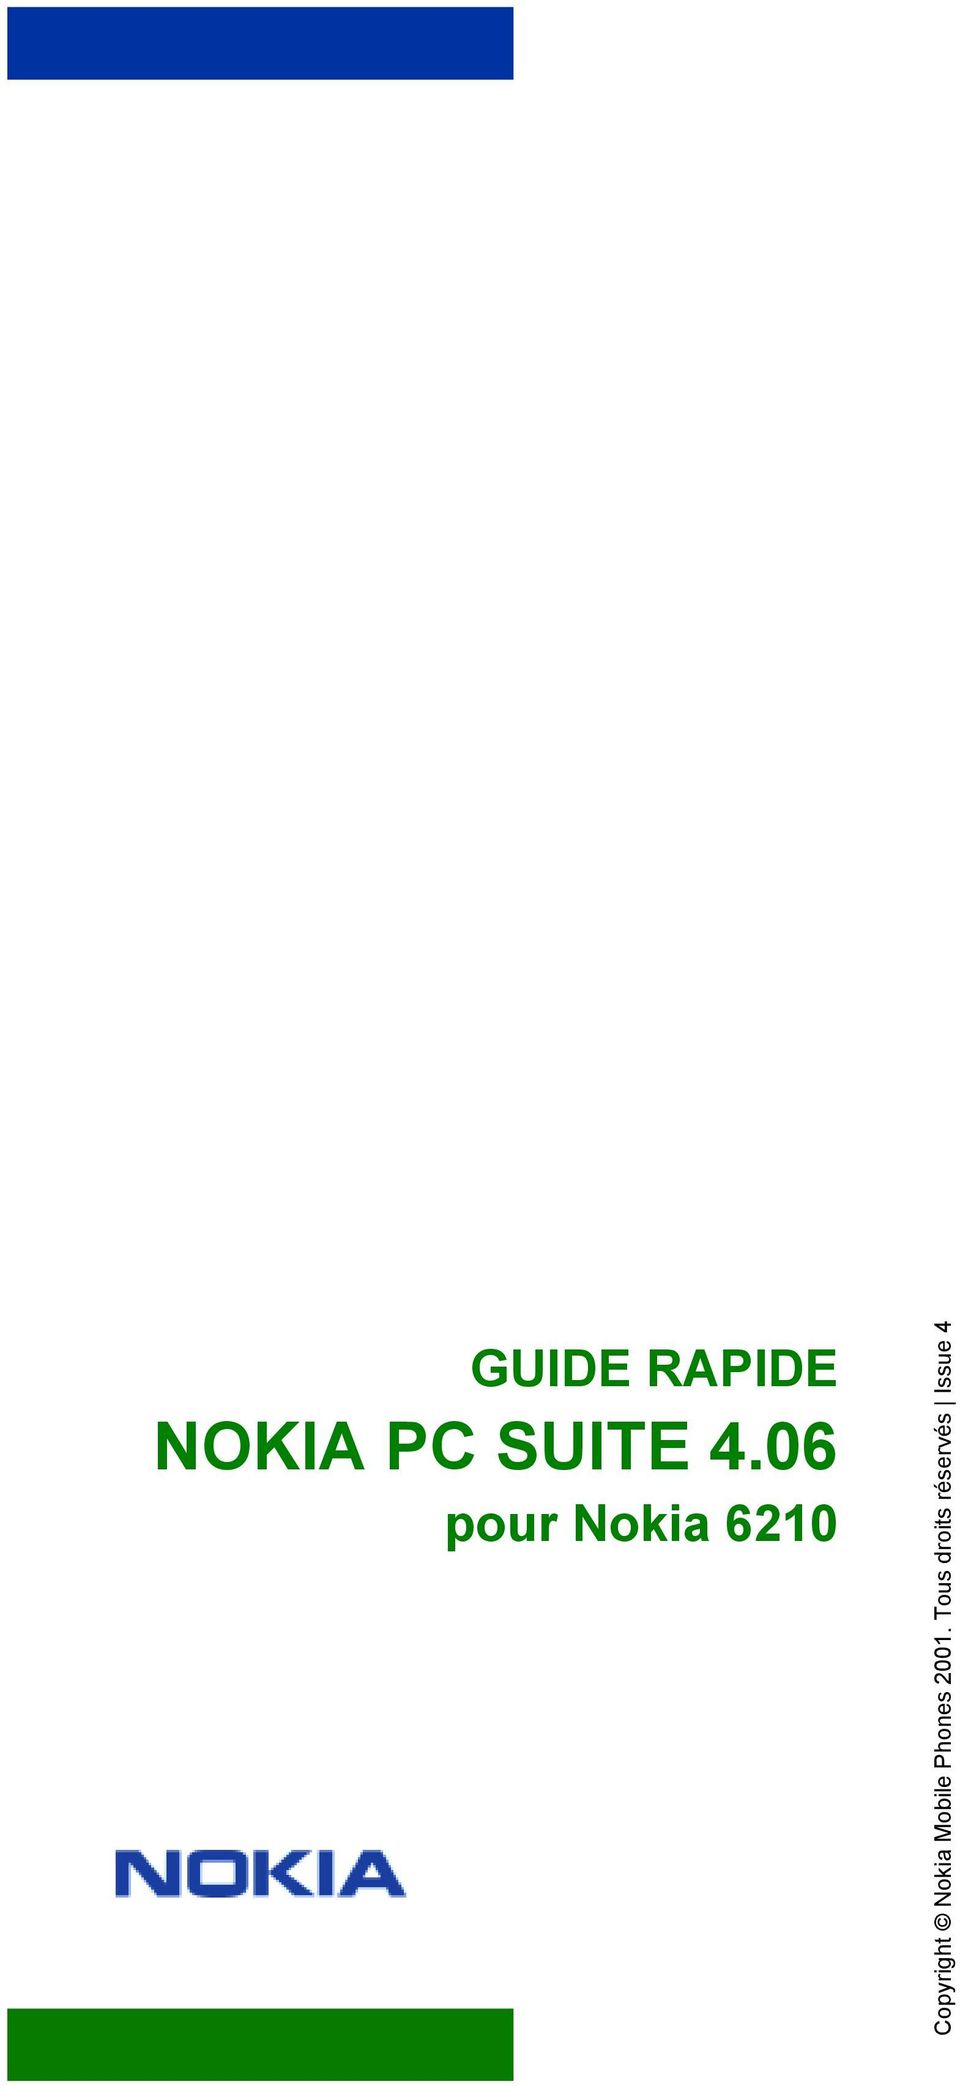 Copyright Nokia Mobile